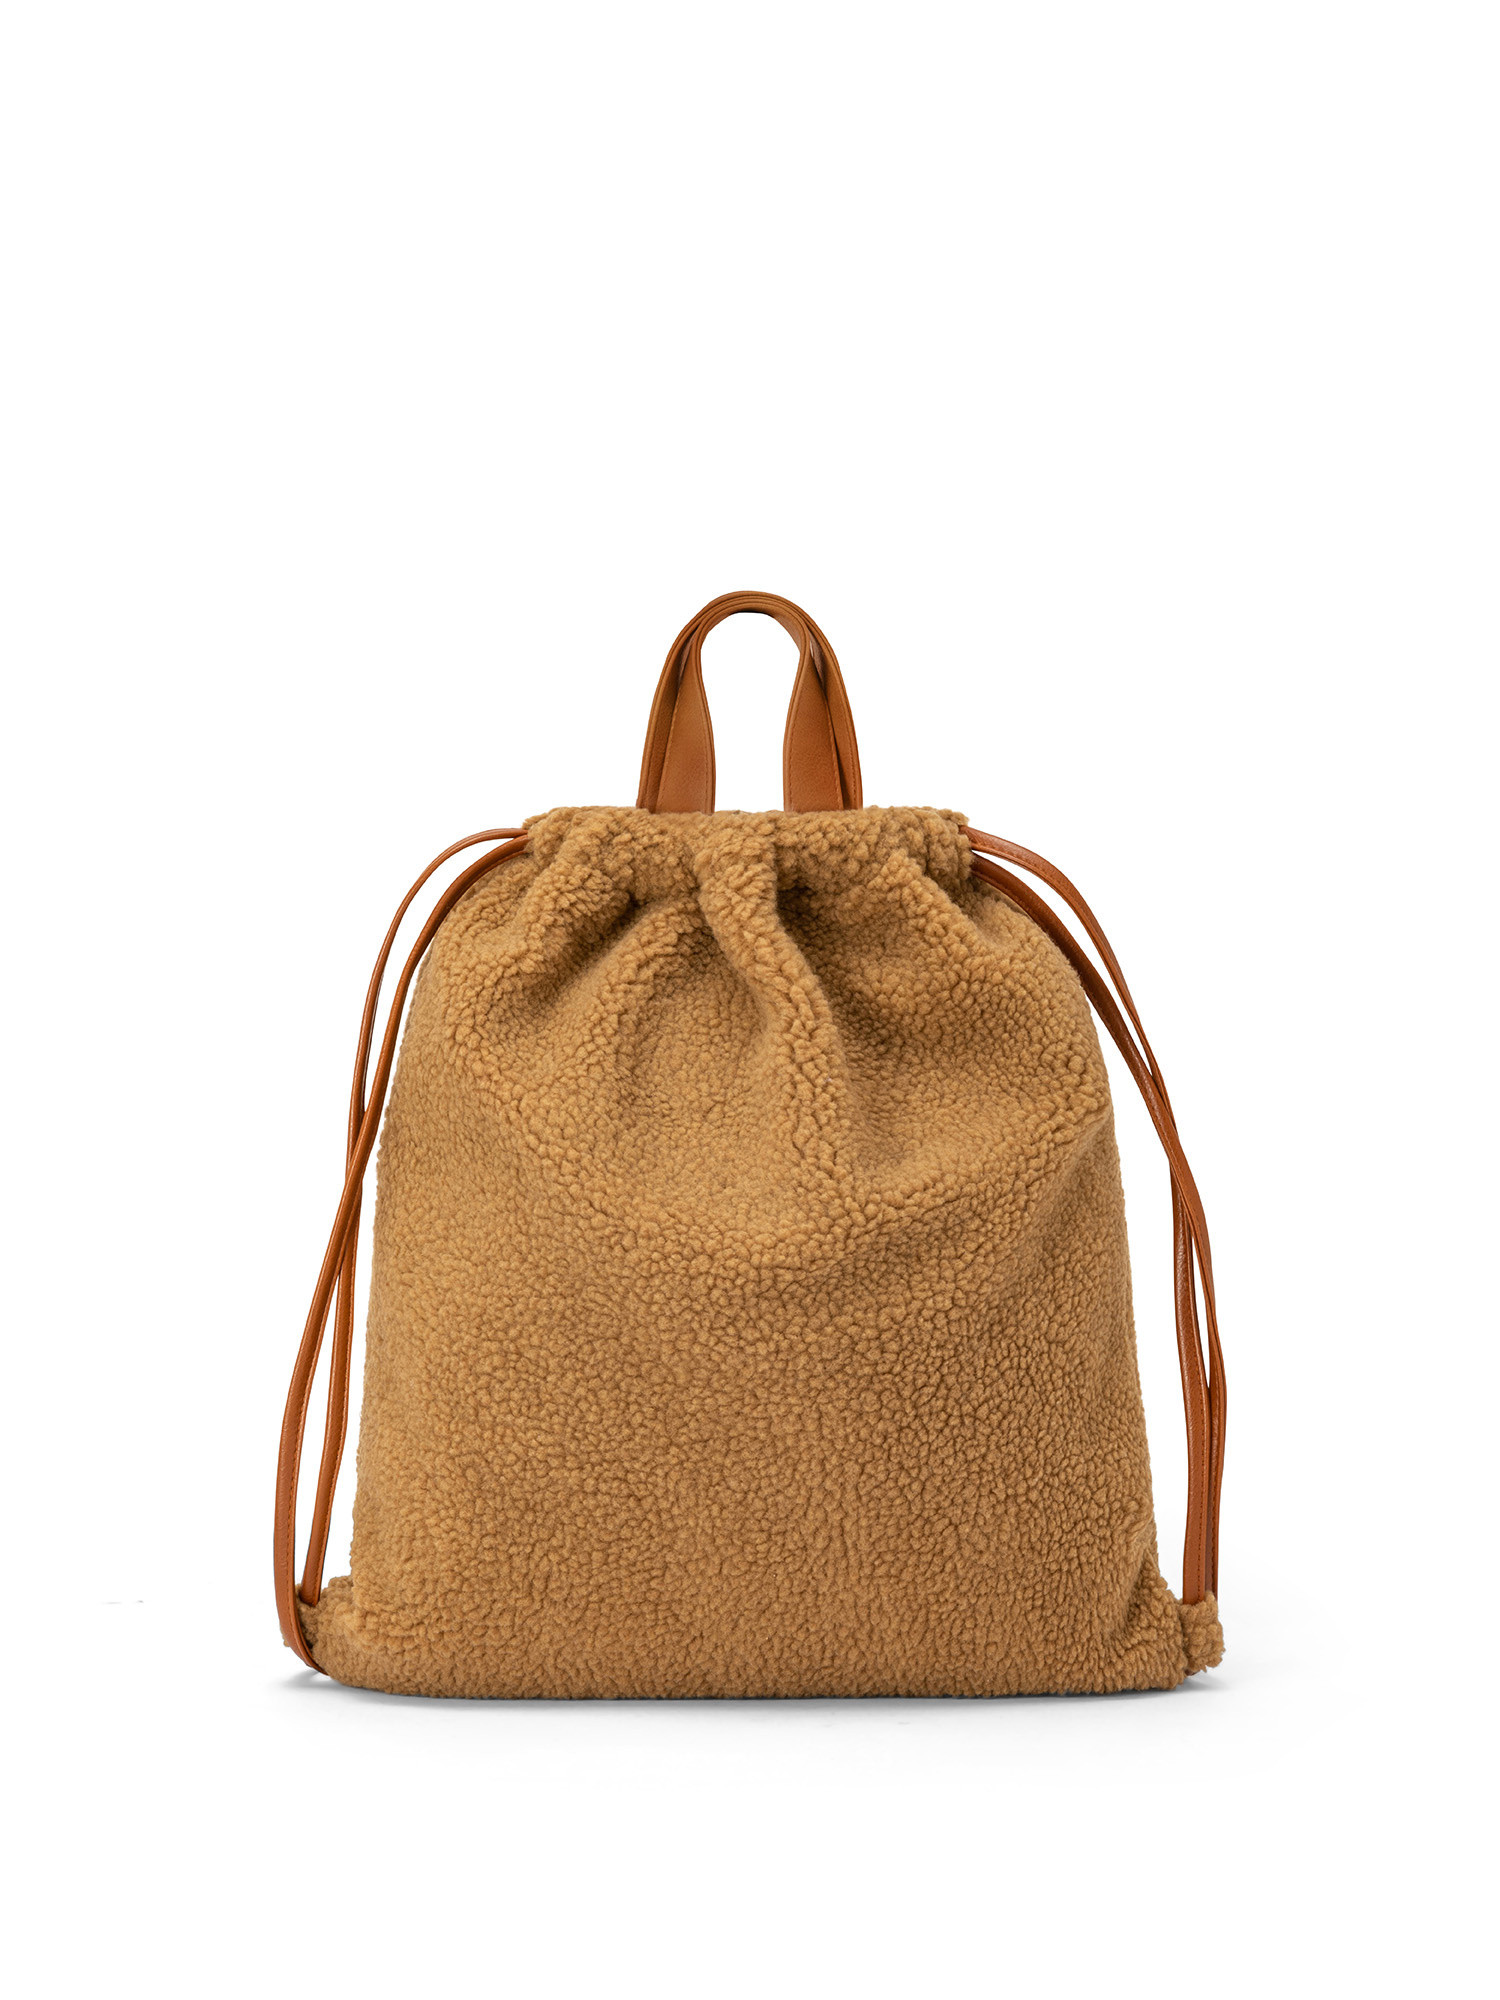 Koan - Faux fur backpack, Hazelnut Brown, large image number 0